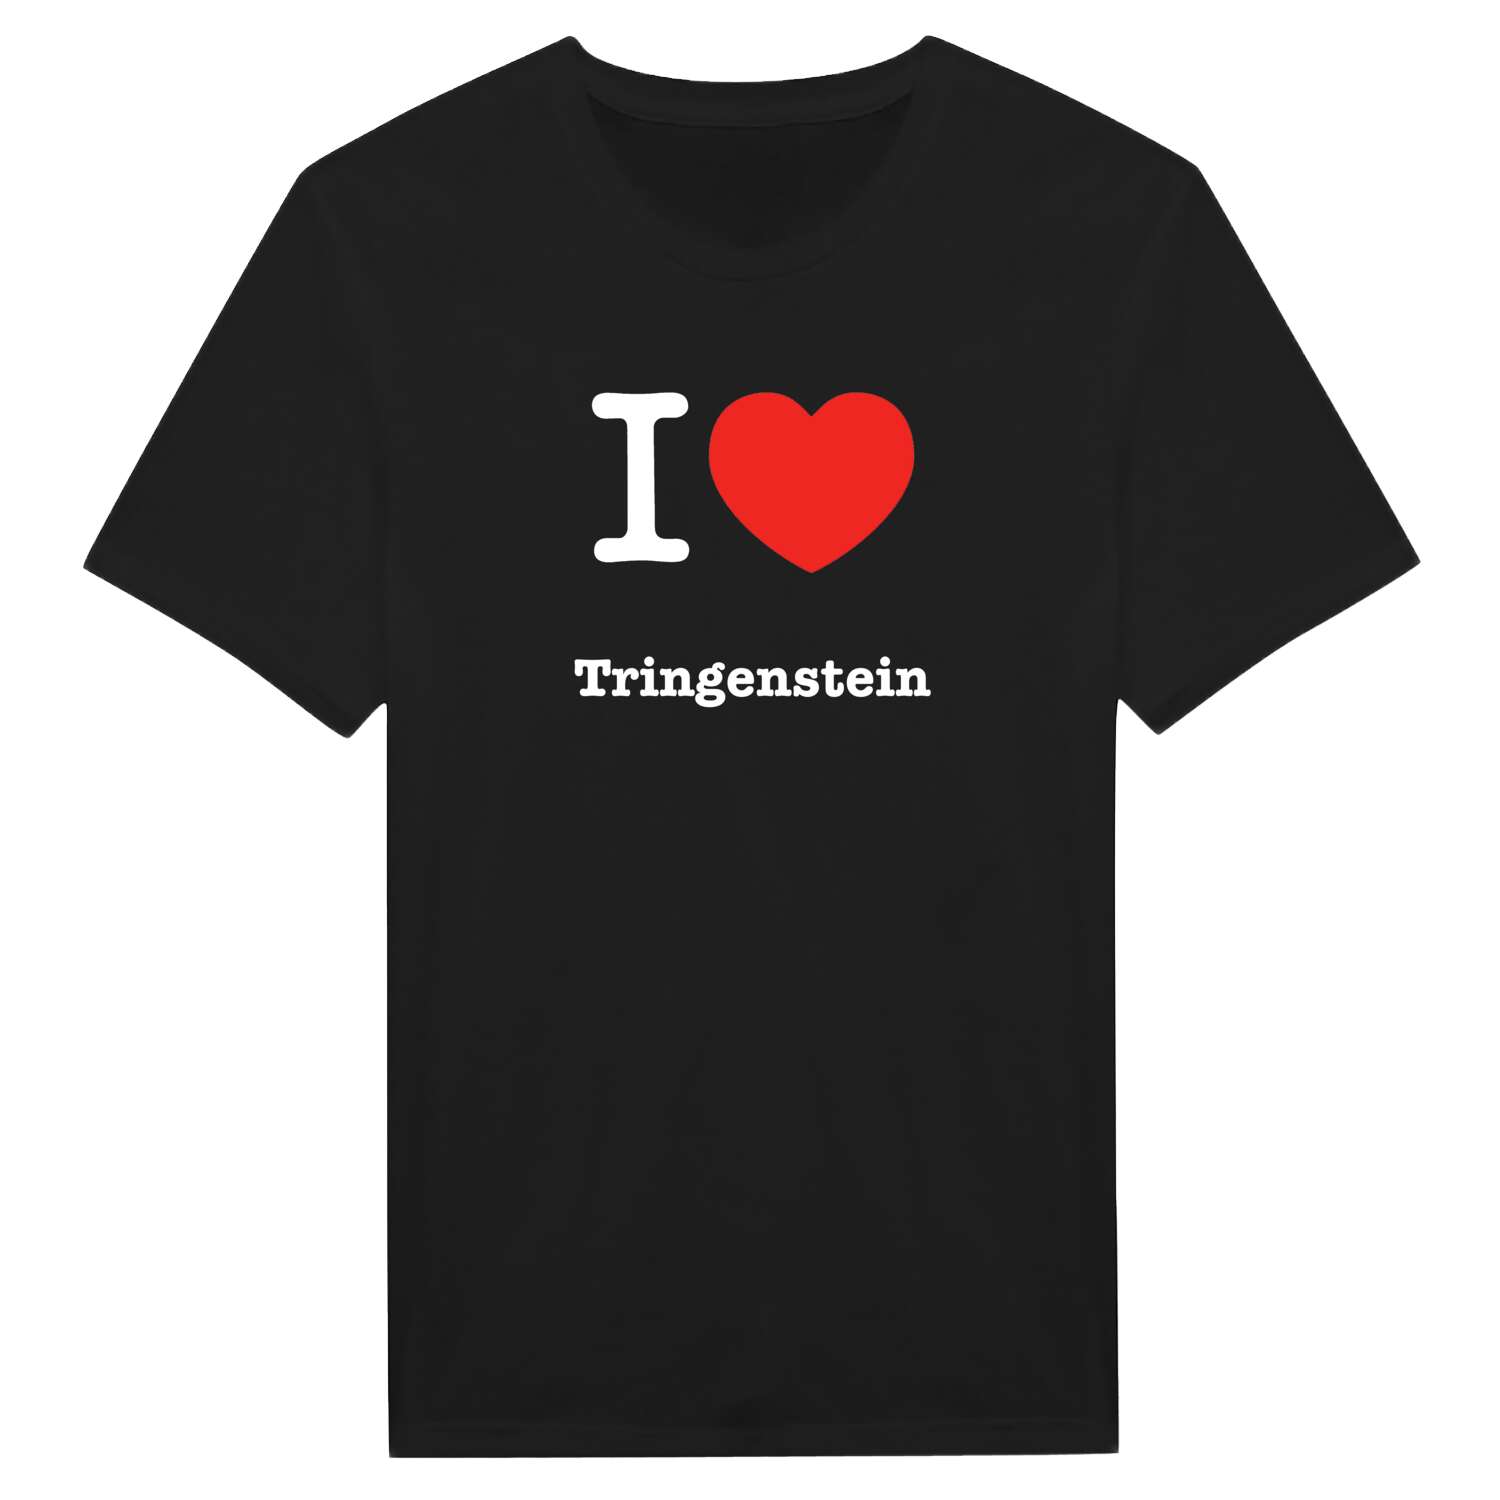 Tringenstein T-Shirt »I love«